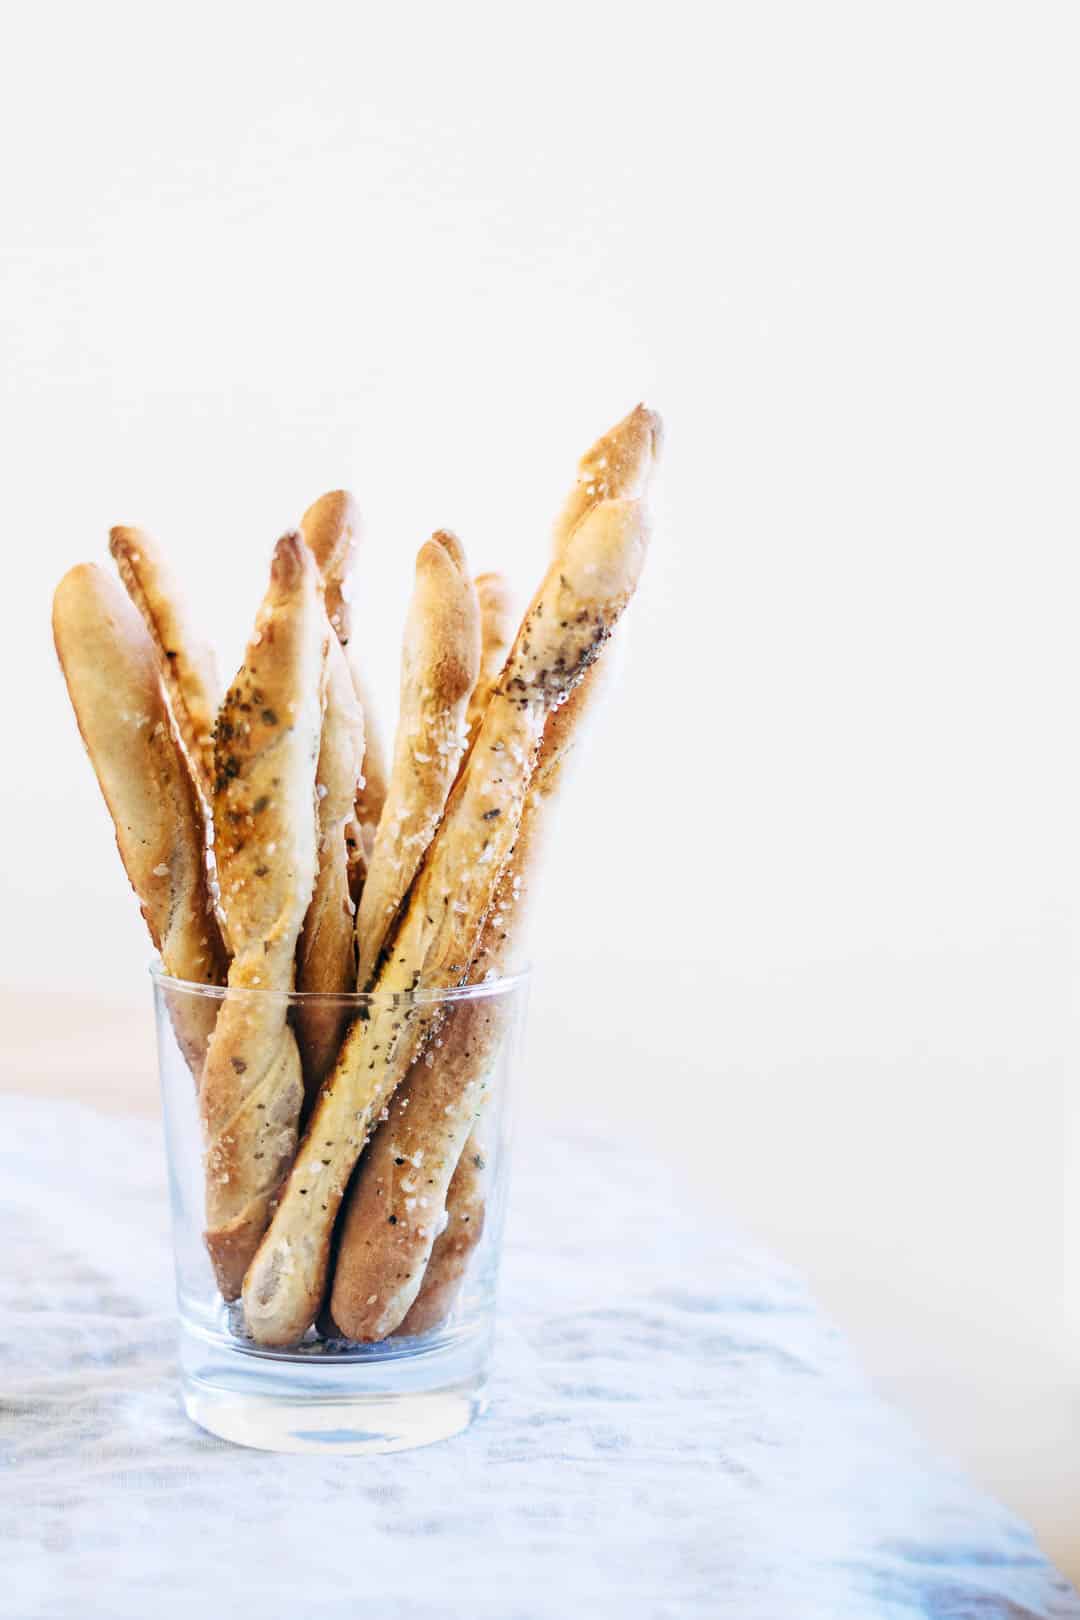 Grissini stænger med salt og rosmarin - opskrift på italienske brødpinde